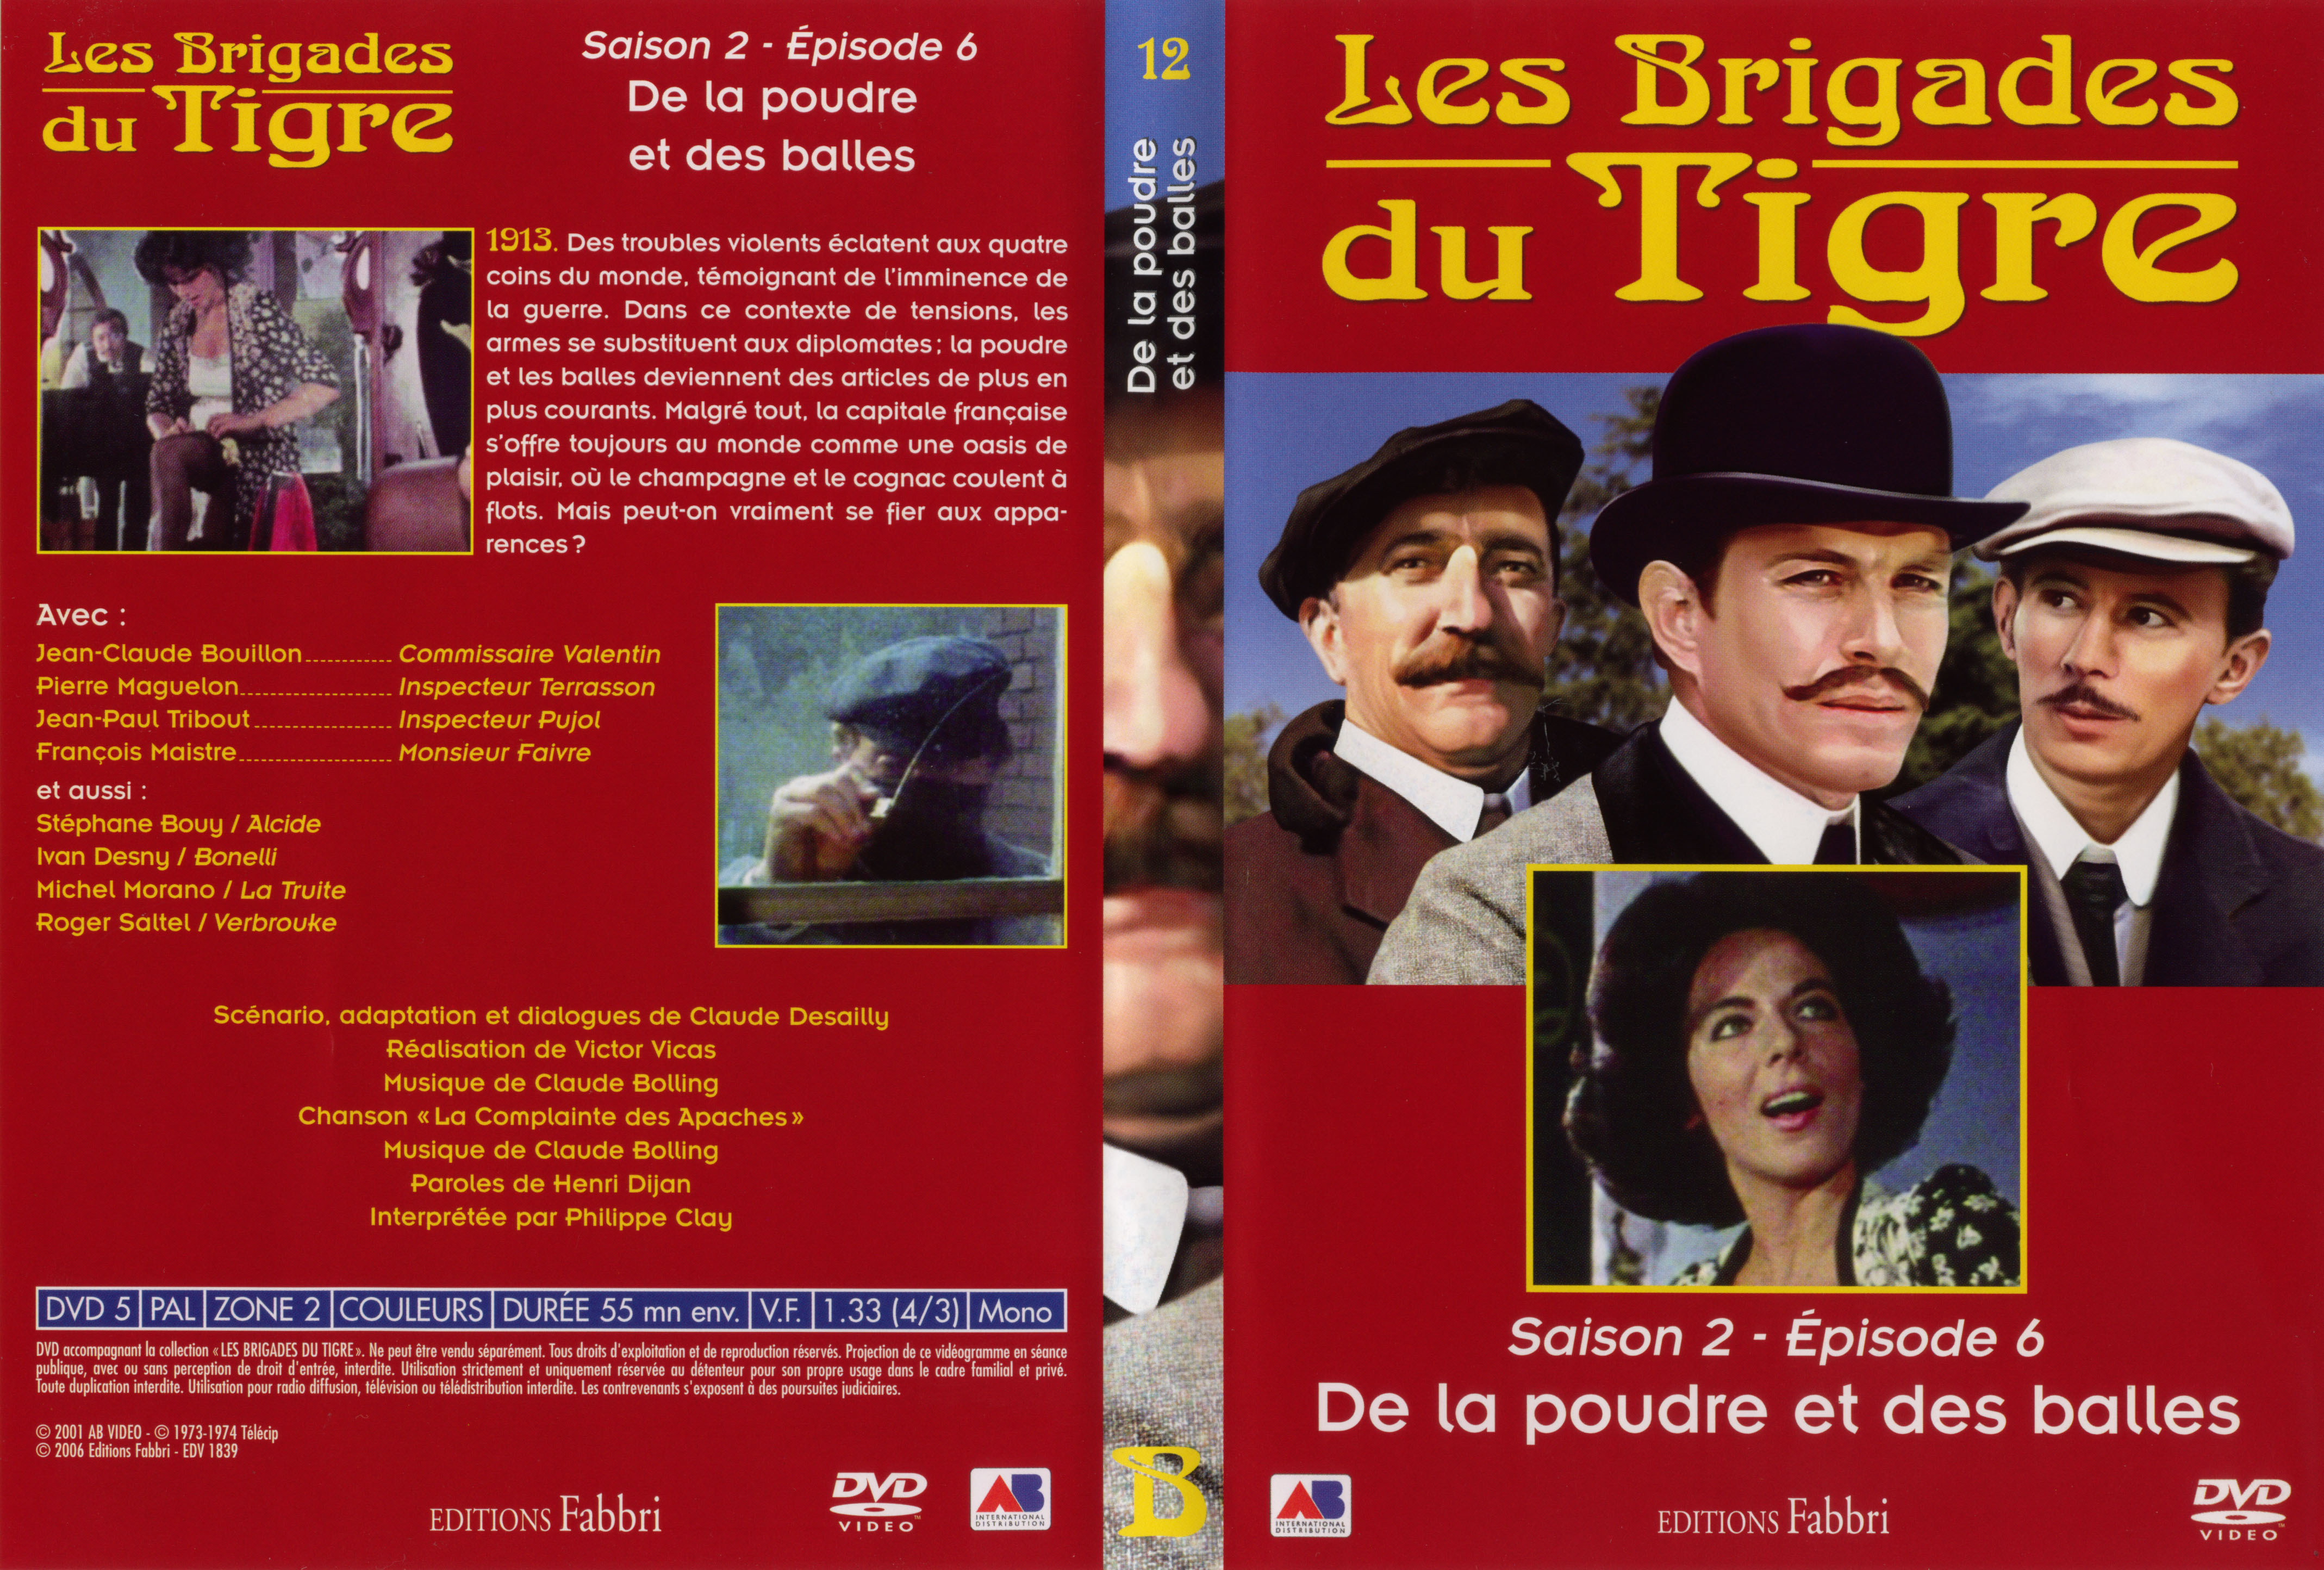 Jaquette DVD Les brigades du tigre saison 2 pisode 6